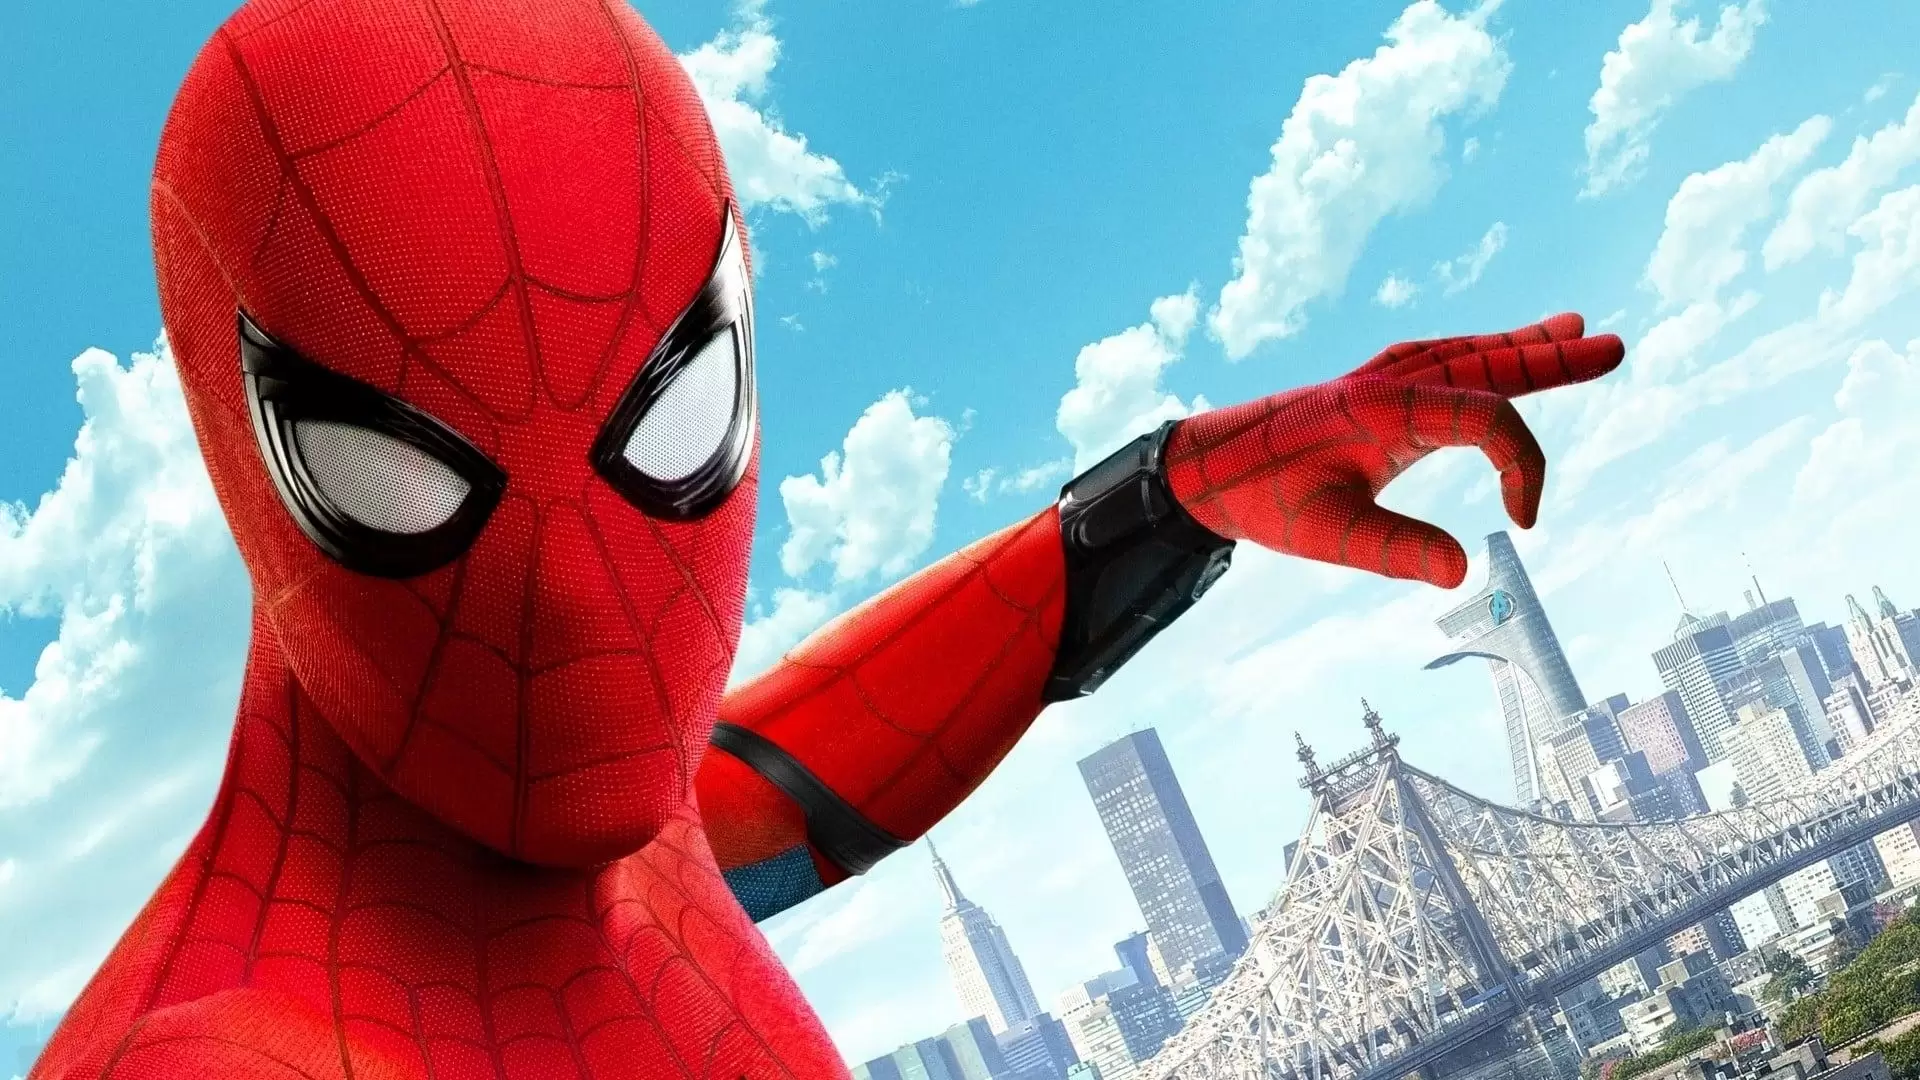 دانلود فیلم Spider-Man: Homecoming 2017 (مرد عنکبوتی: بازگشت به خانه) با زیرنویس فارسی و تماشای آنلاین